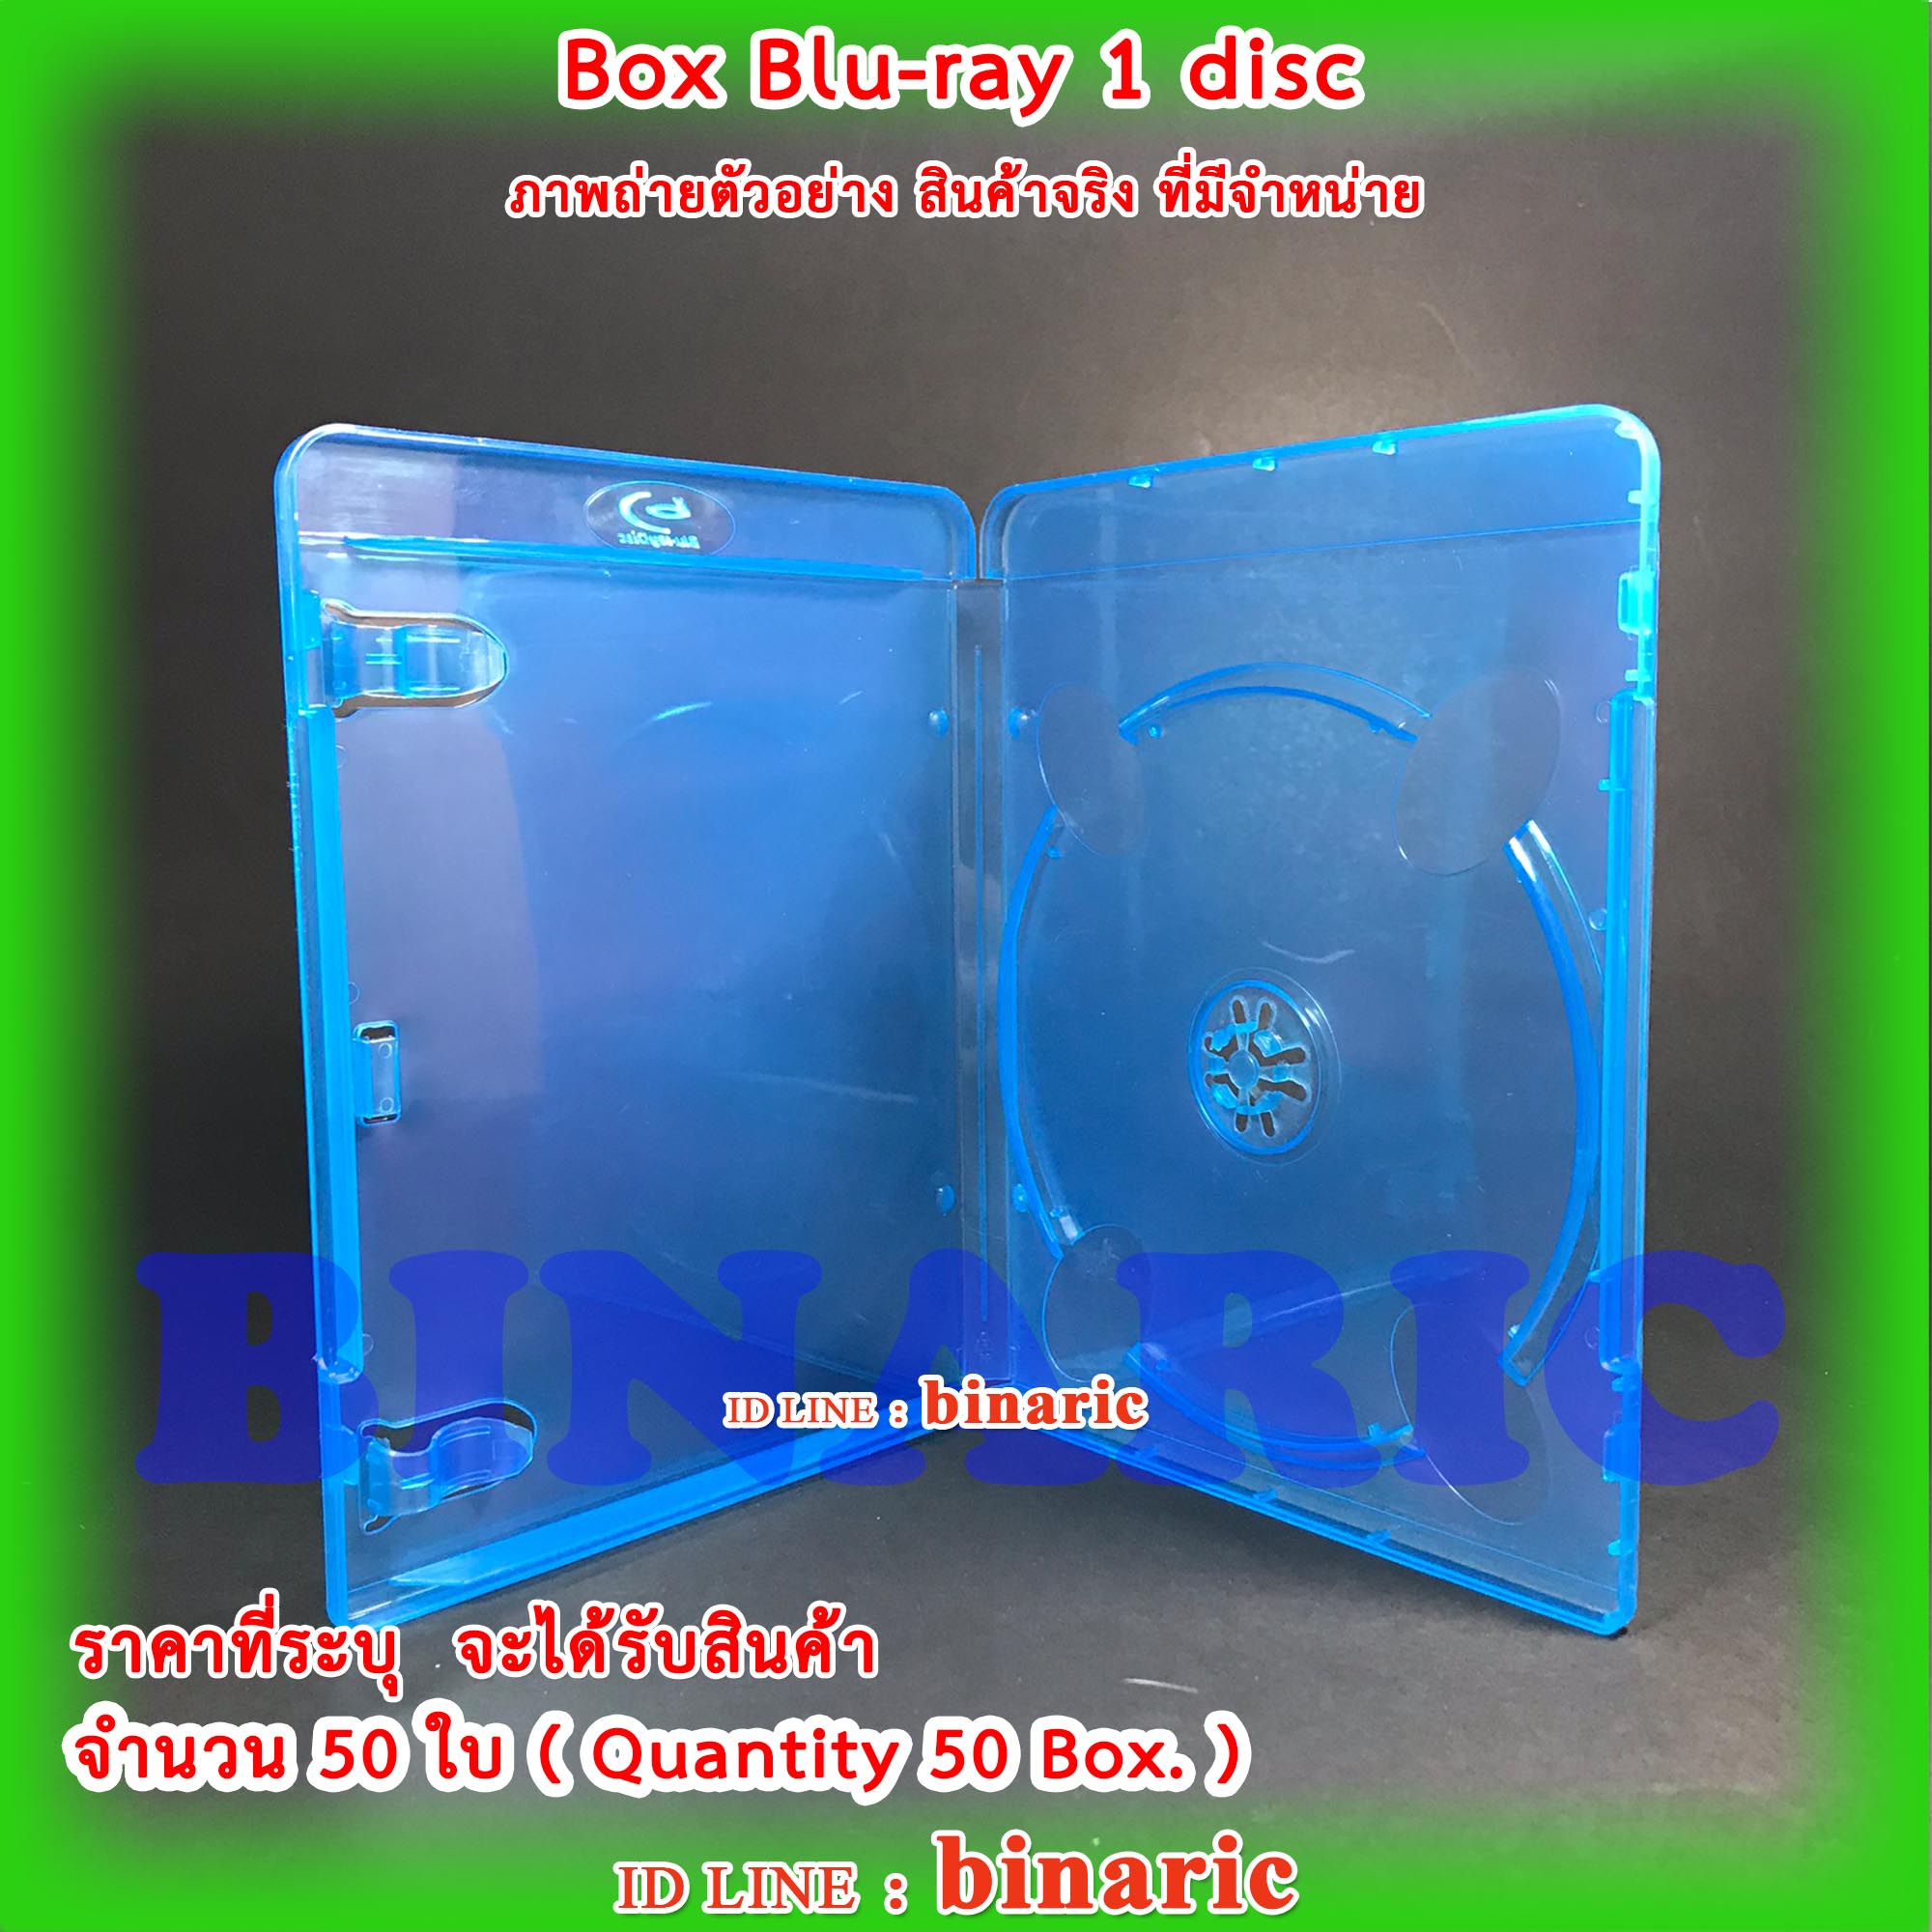 Box Bluray 1 disc Blue Color Pack 50 Box. / Blu-ray / กล่องบรรจุ แผ่นบลูเรย์ แบบ 1 แผ่นต่อใบ สีฟ้า จำนวน 50 ใบ